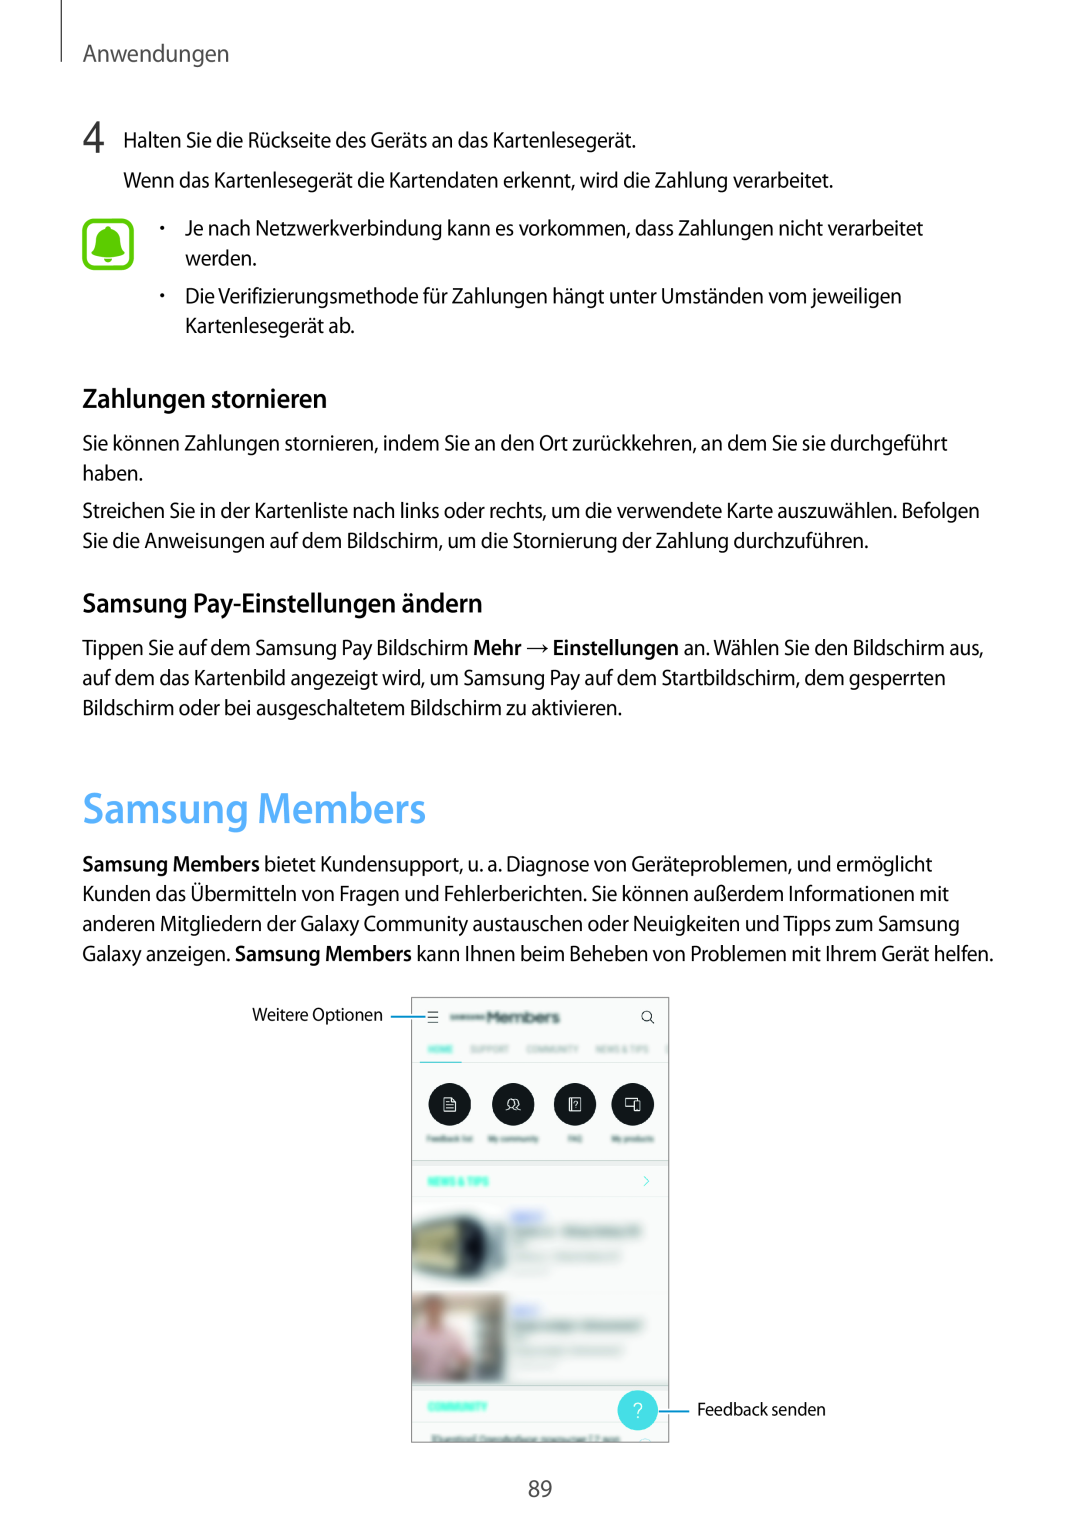 Samsung SM-J530FZDDDBT manual Samsung Members, Zahlungen stornieren, Samsung Pay-Einstellungen ändern, Anwendungen 